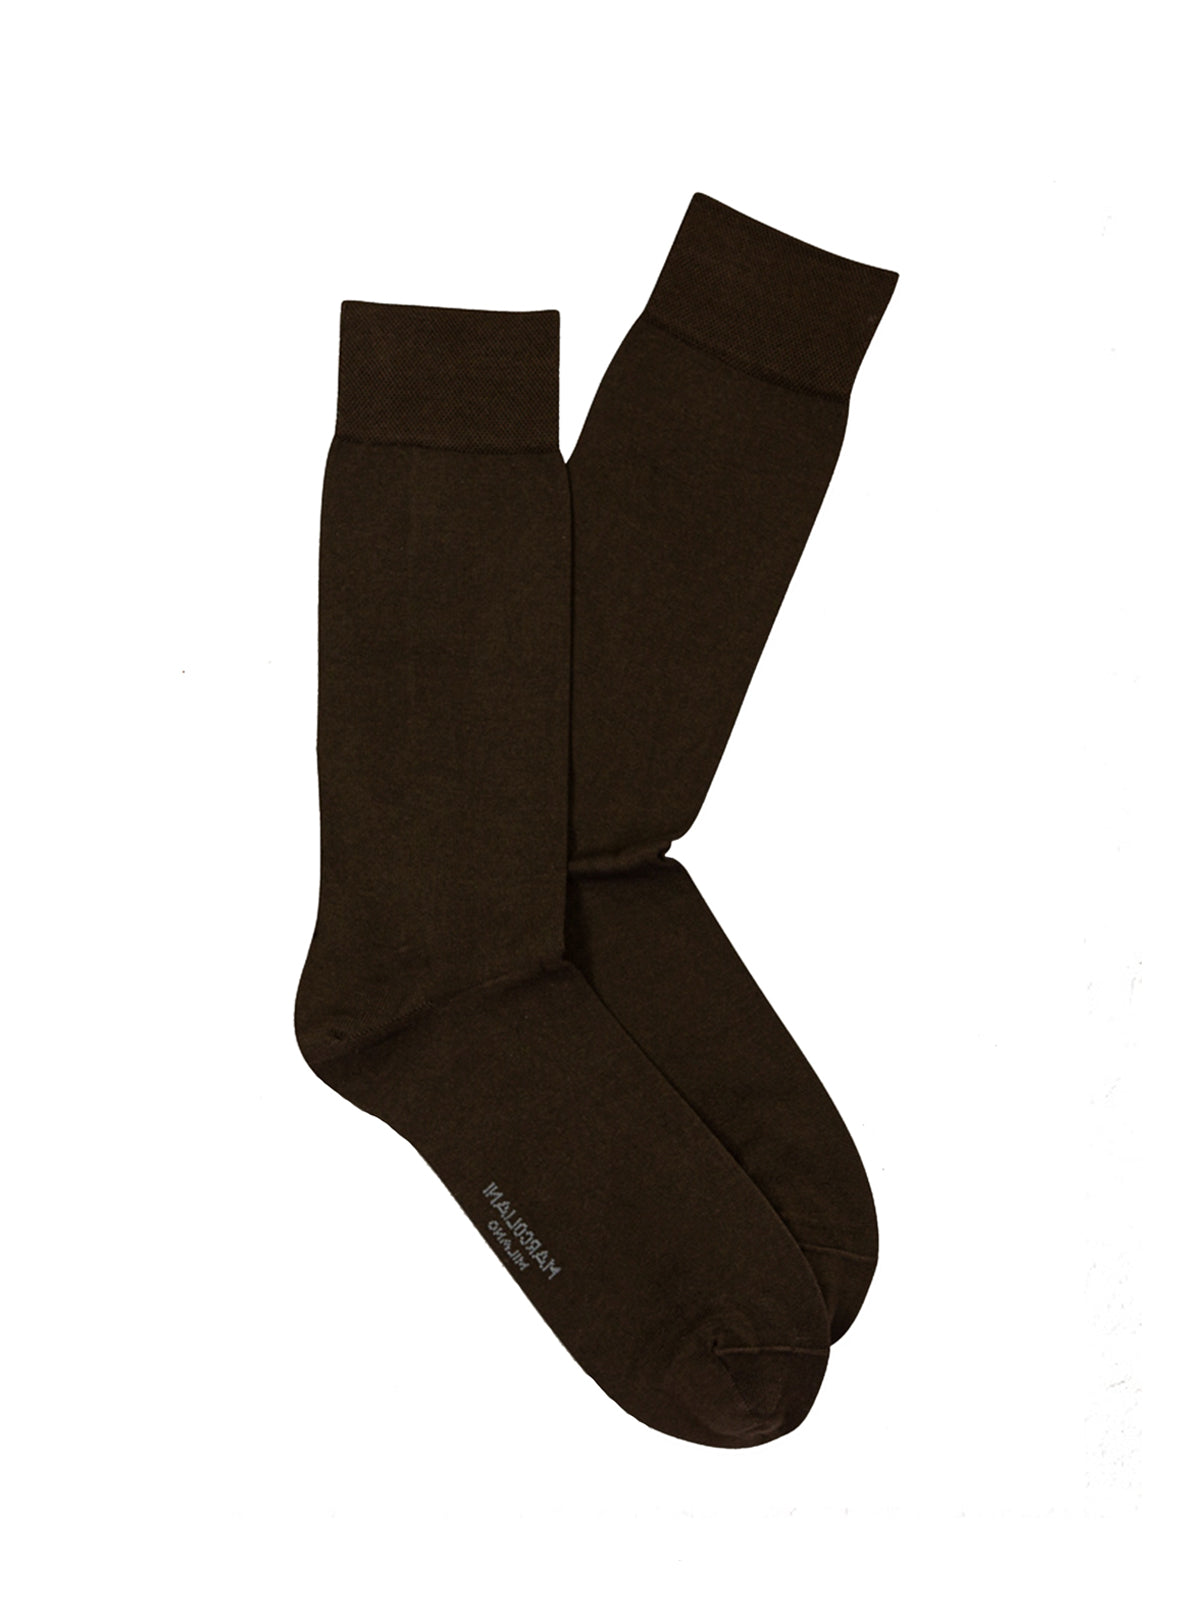 Marcoliani Pima Cotton Classic Plain Dark Brown Socks